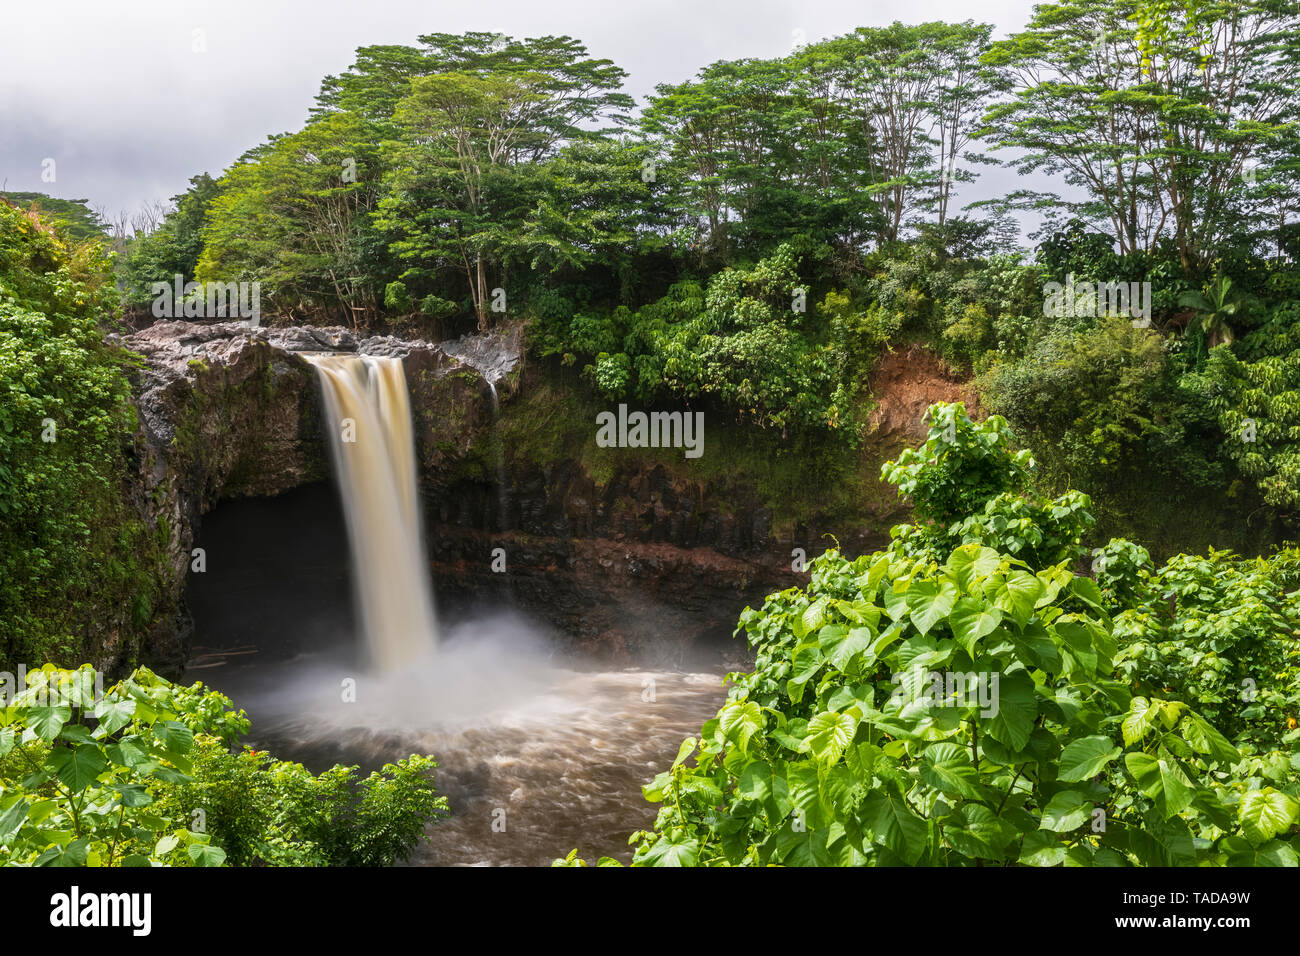 USA, Hawaii, Big Island, Hilo, Rainbow Falls Stock Photo